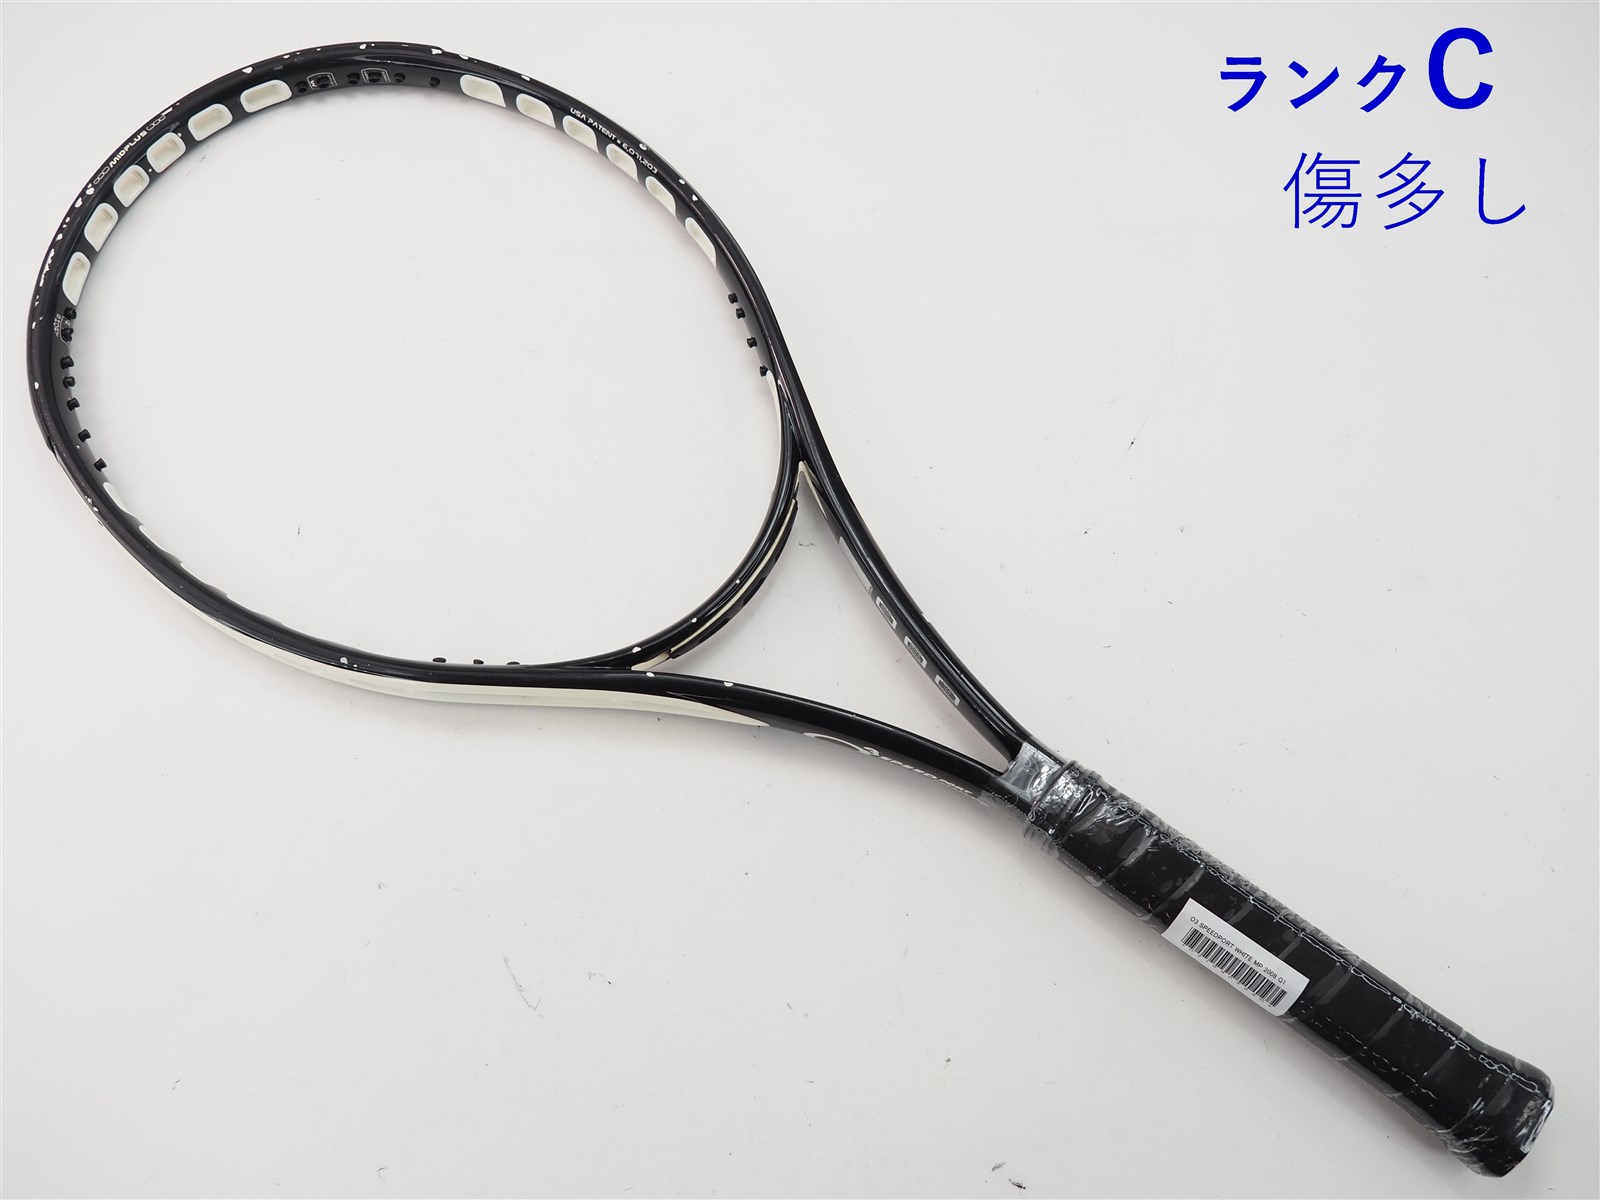 270インチフレーム厚テニスラケット プリンス オースリー スピードポート ブラック MP 2007年モデル (G2)PRINCE O3 SPEEDPORT BLACK MP 2007